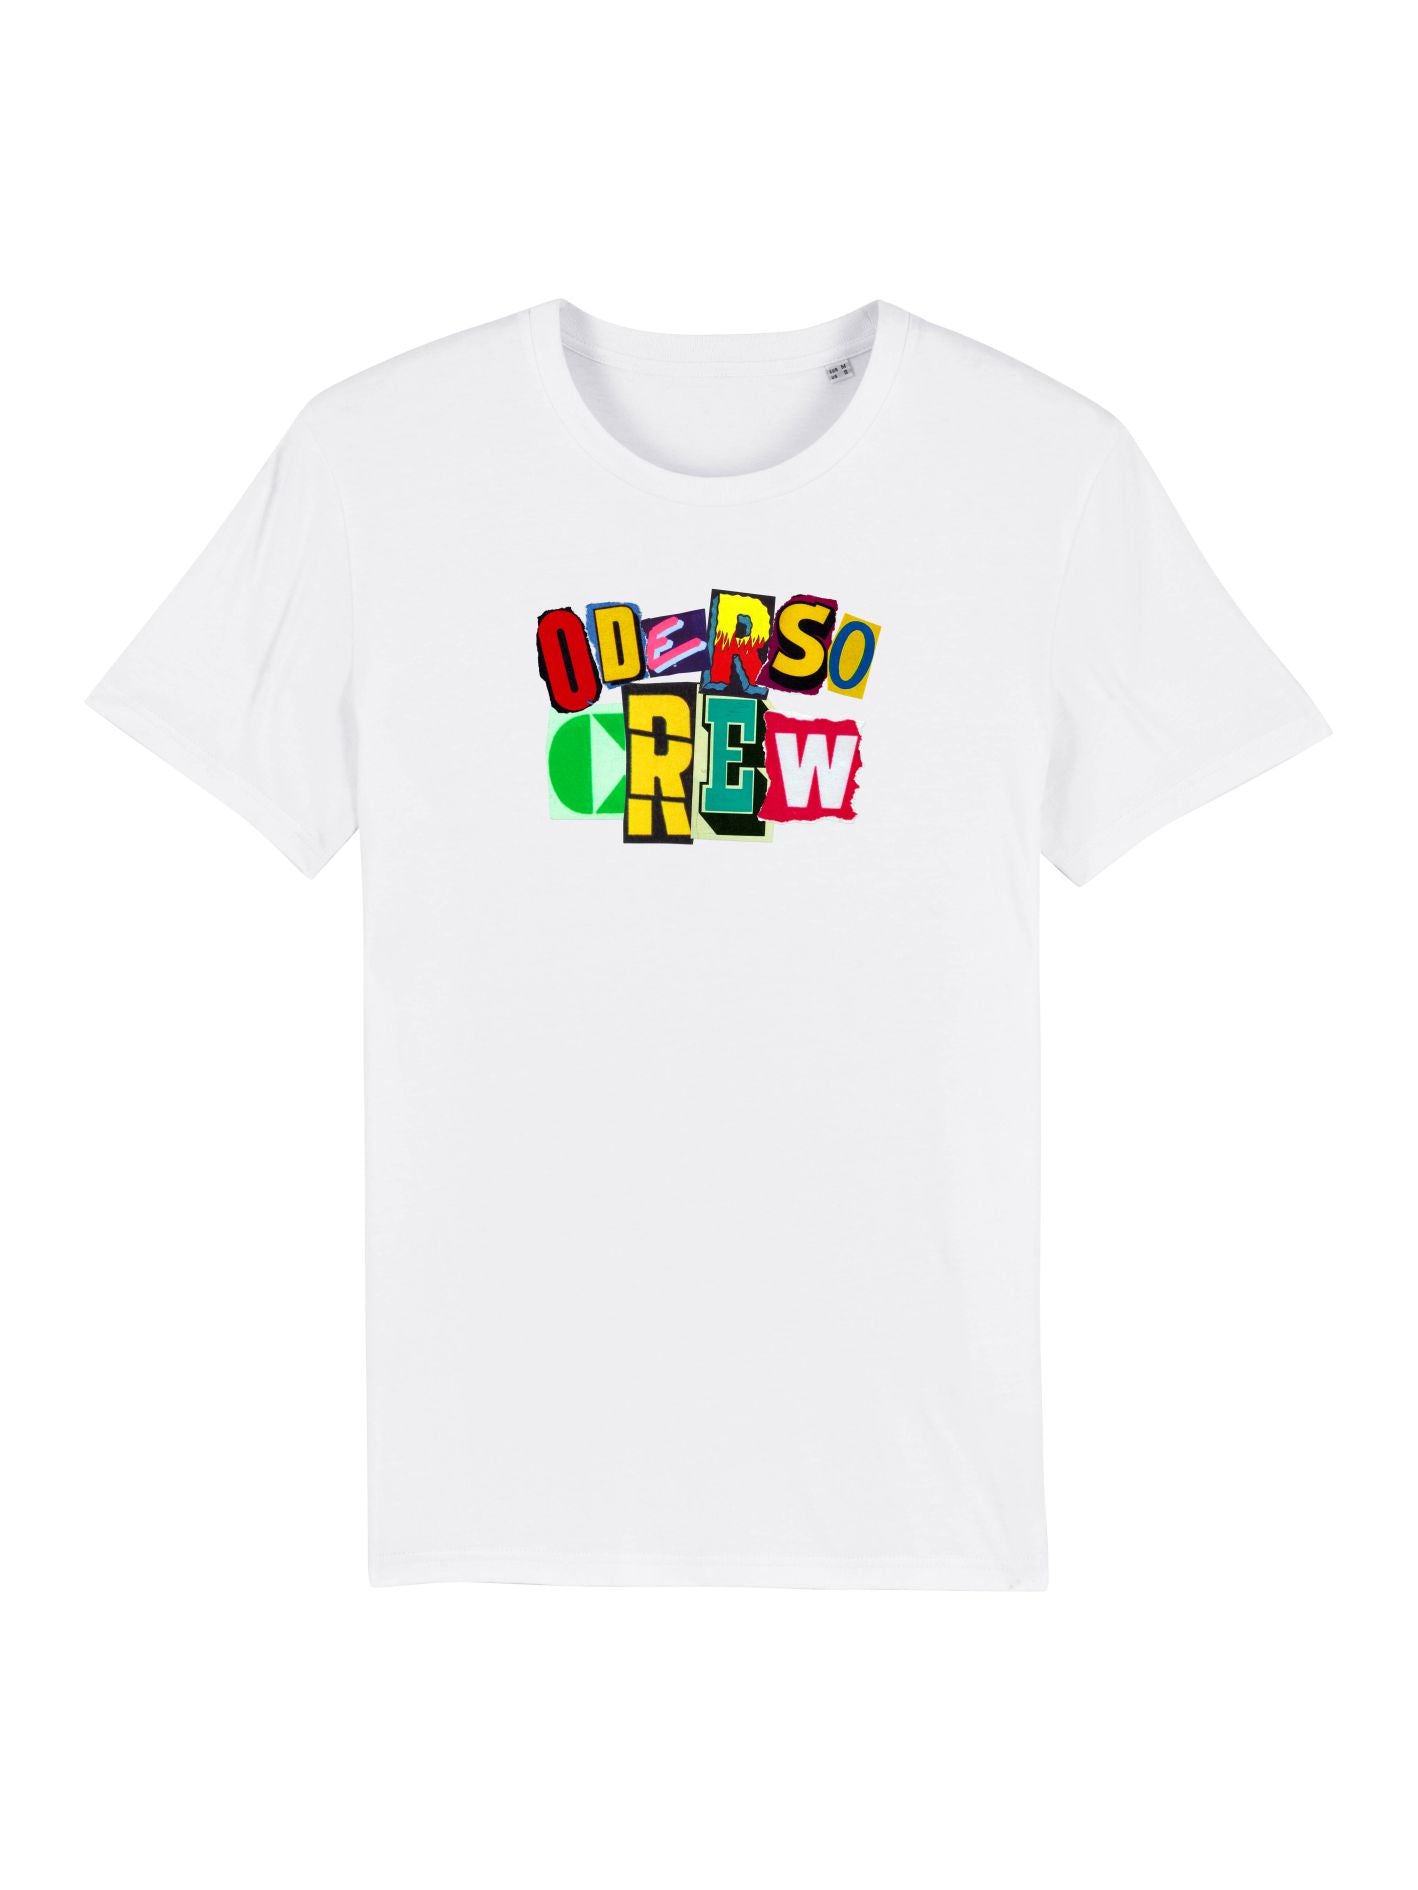 OderSoCrew Kids - Shirt